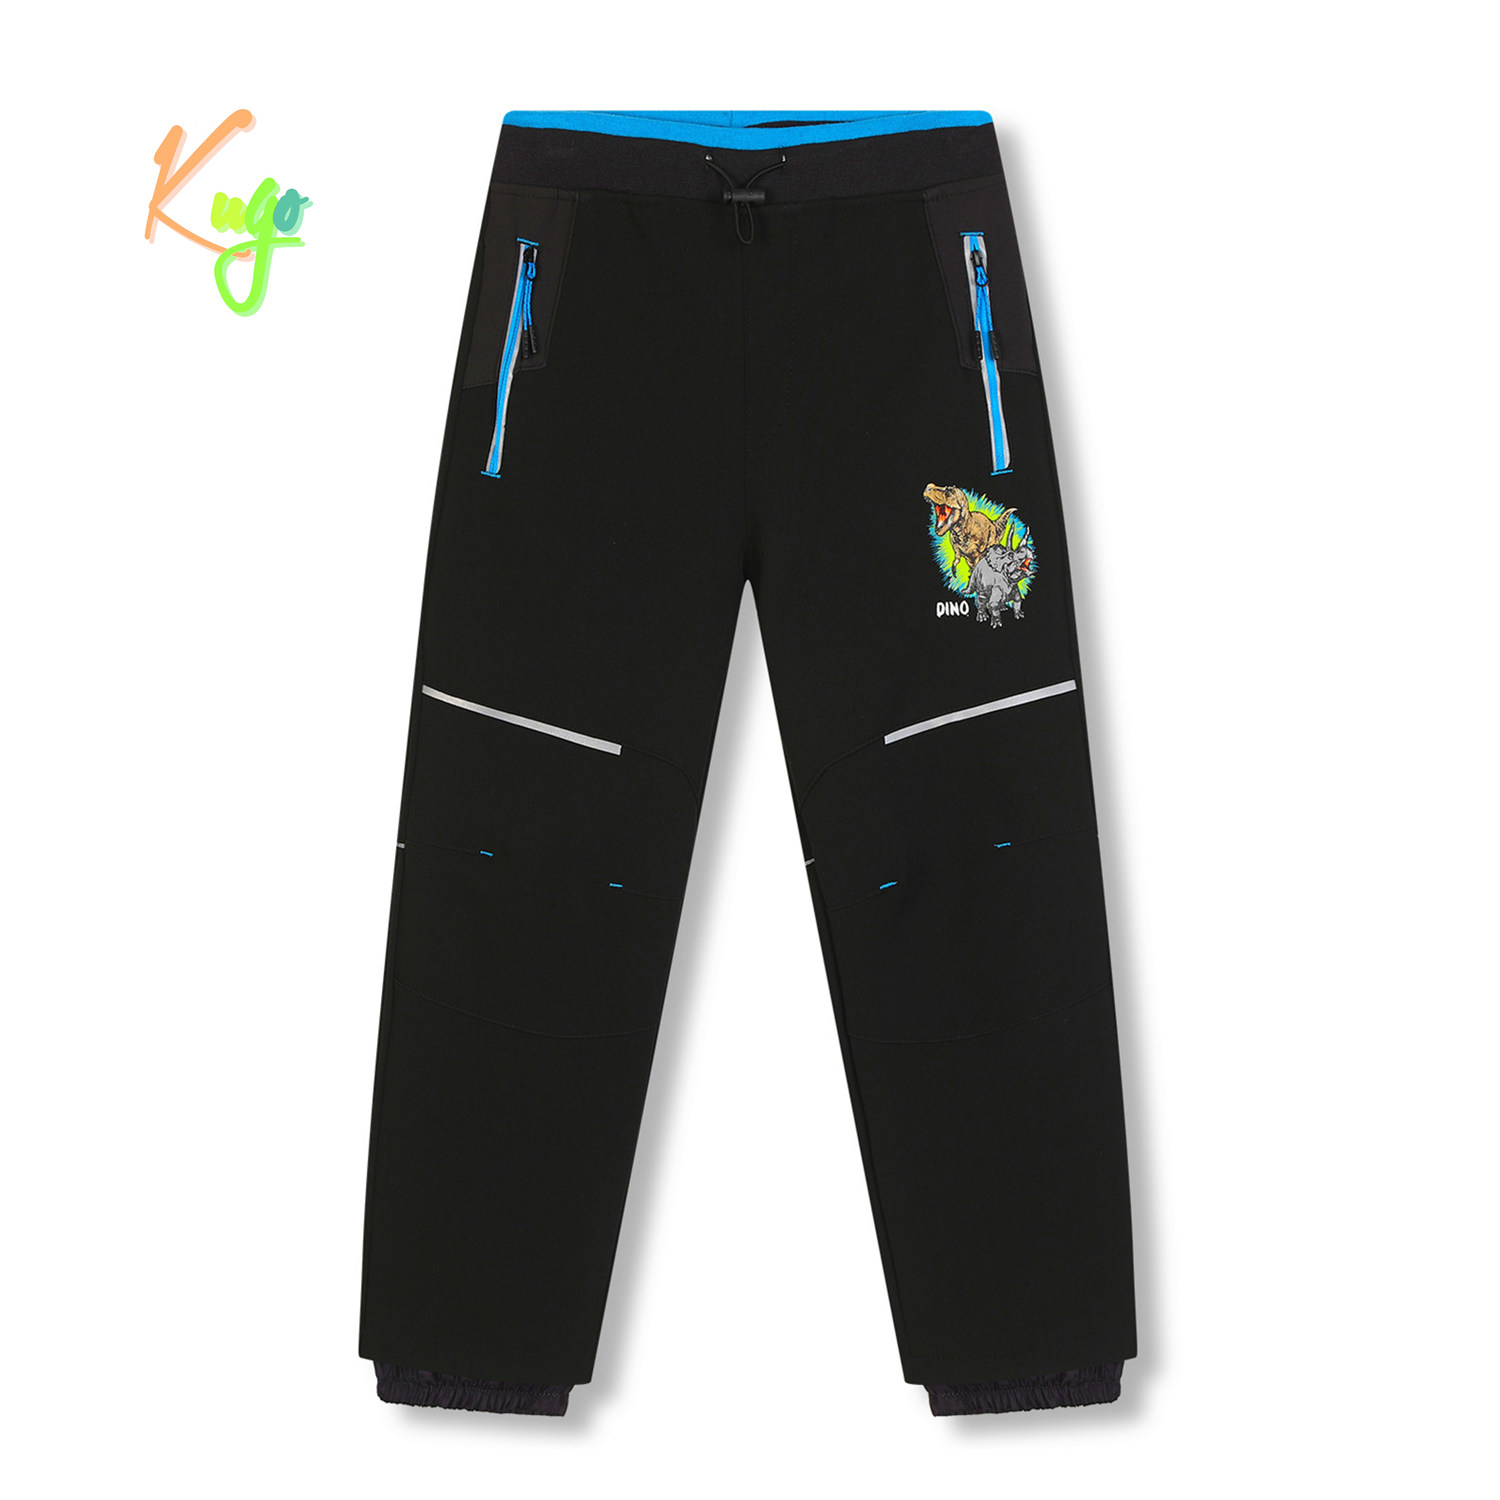 Chlapecké softshellové kalhoty, zateplené - KUGO HK5612, černá / tyrkysové zipy Barva: Černá, Velikost: 134